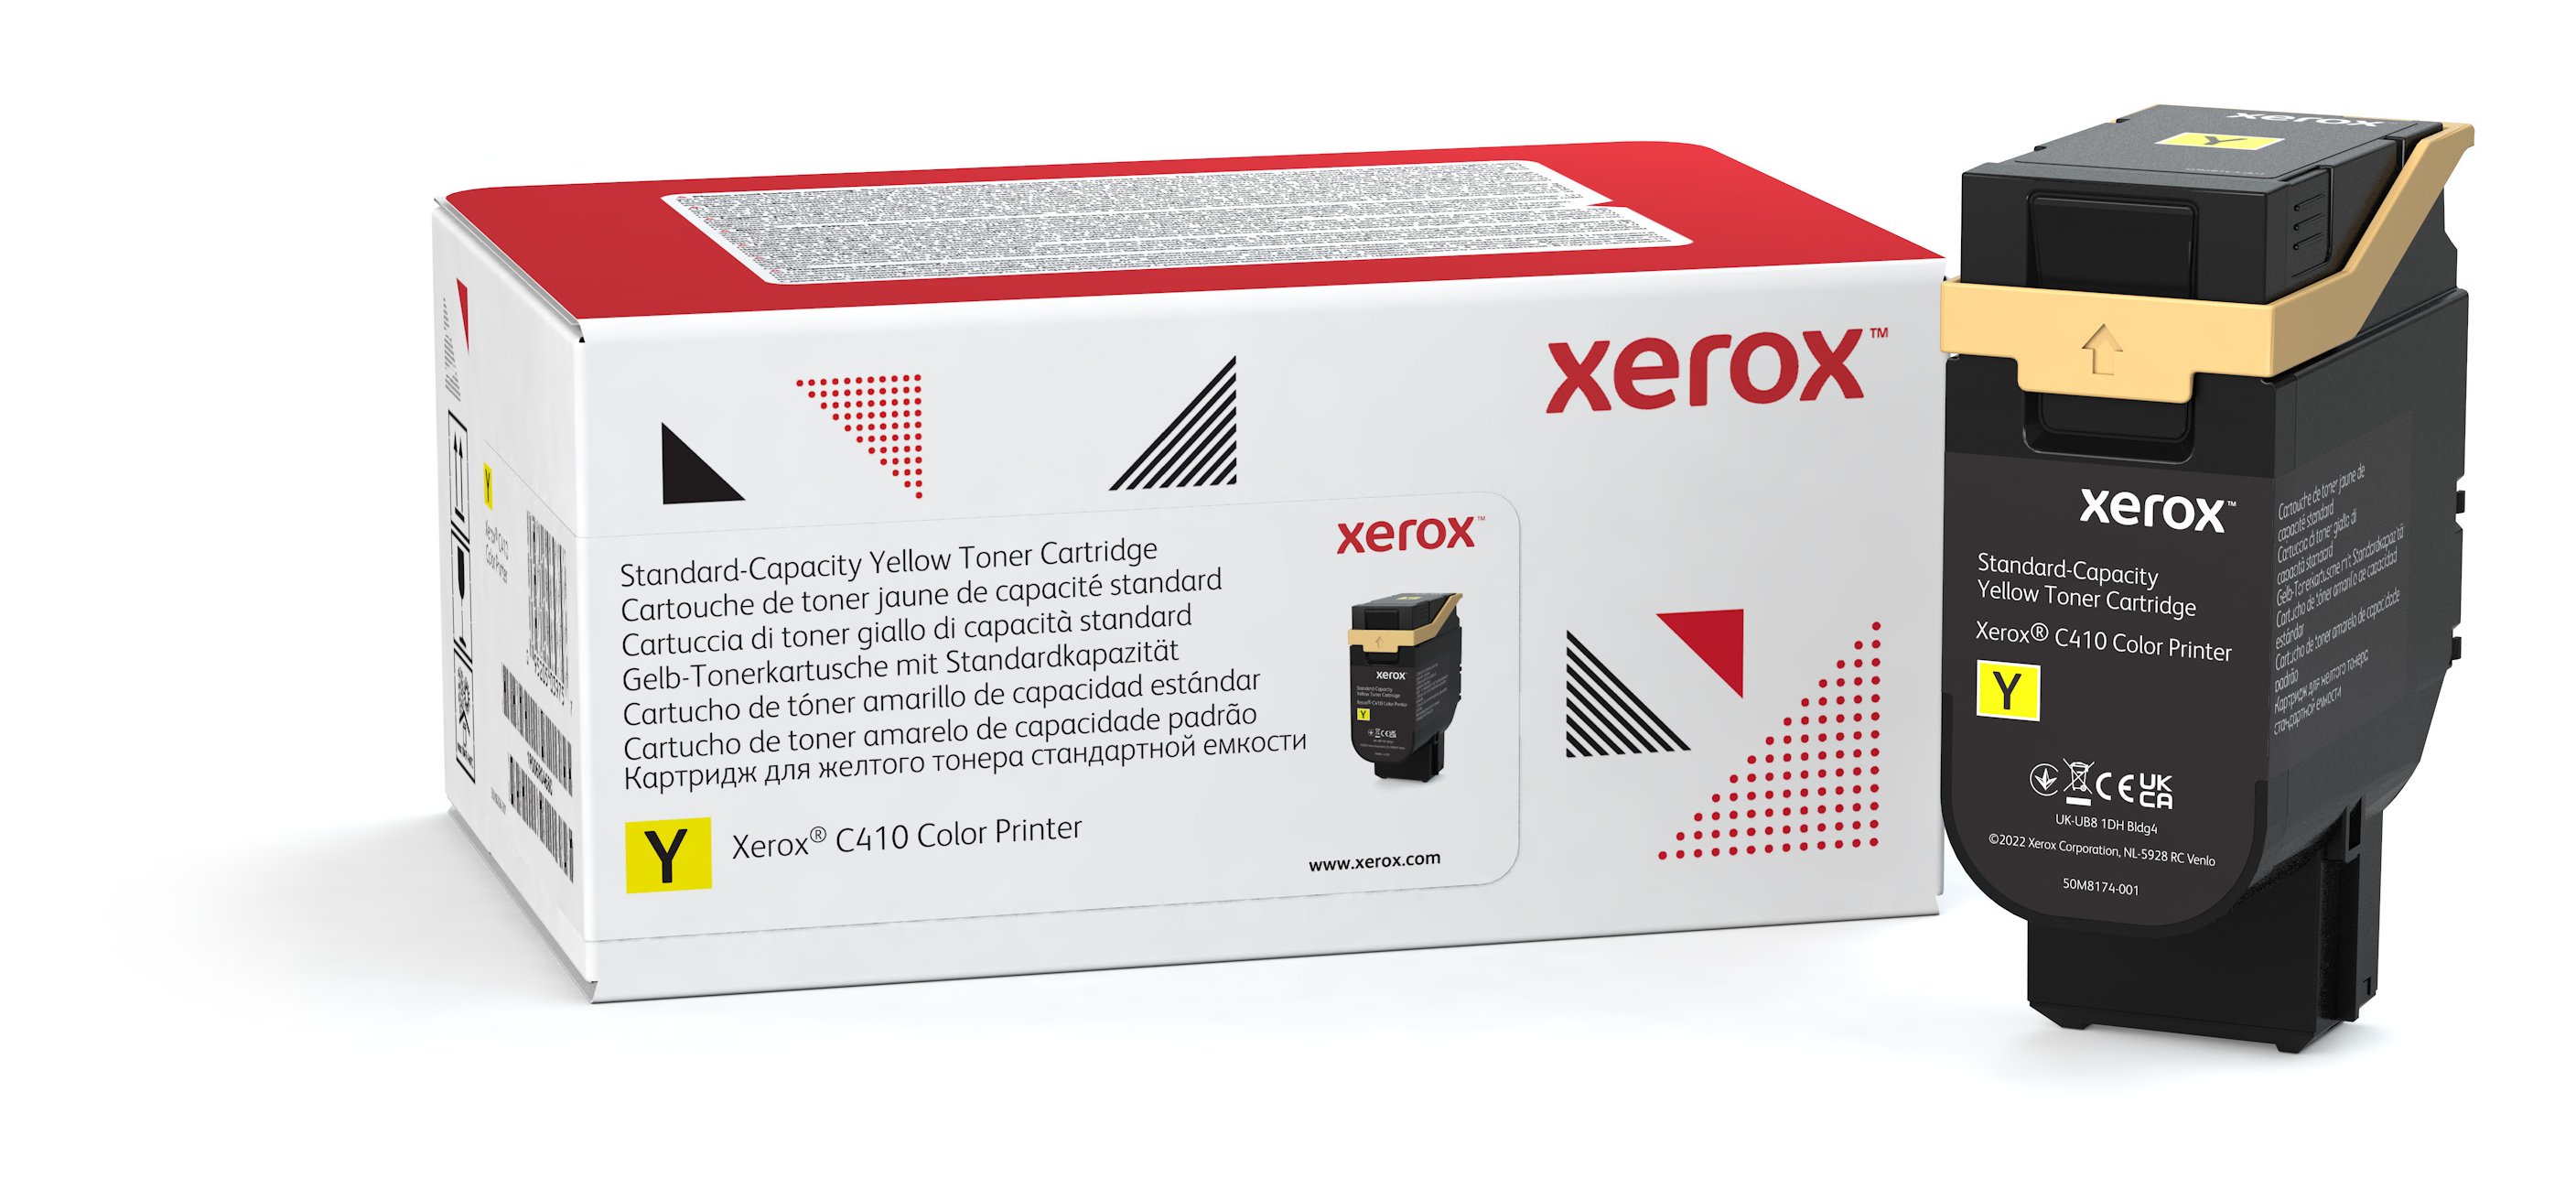 Genuine Xerox Yellow Standard Capacity Toner Cartridge For The Xerox  C410/C415 (Use & Return) 006R04680 Genuine Xerox Supplies